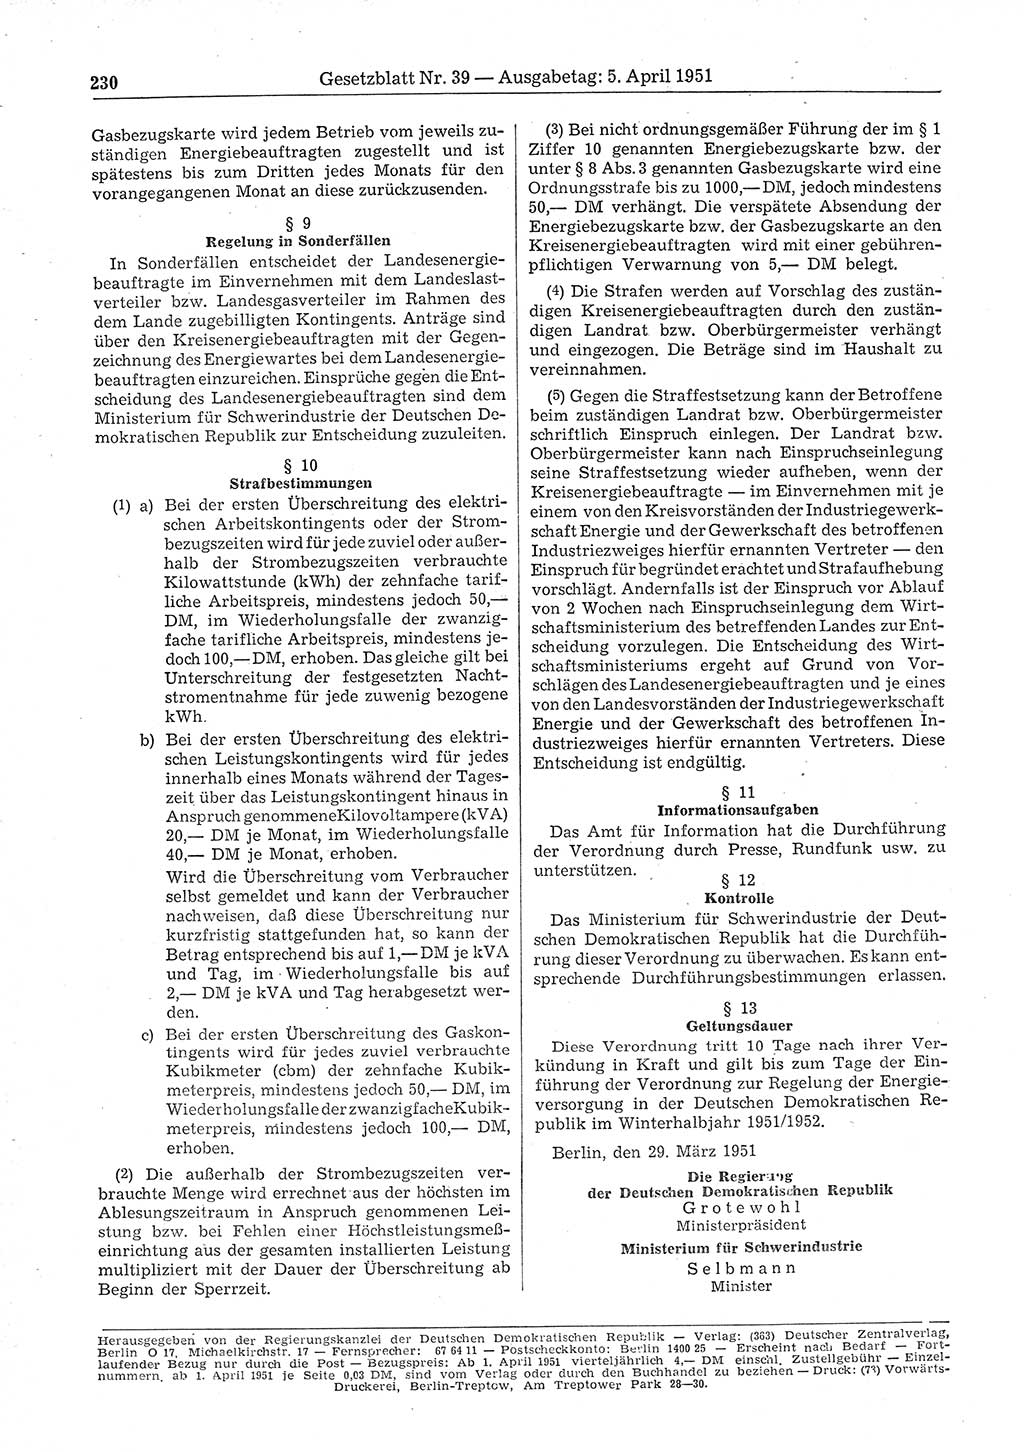 Gesetzblatt (GBl.) der Deutschen Demokratischen Republik (DDR) 1951, Seite 230 (GBl. DDR 1951, S. 230)